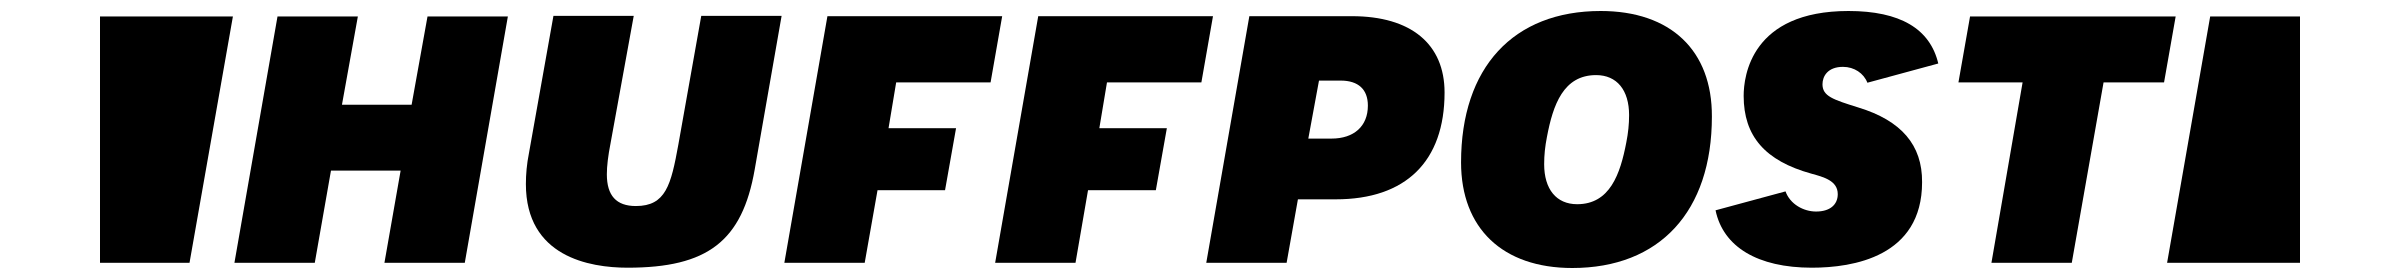 huffpost logo.png